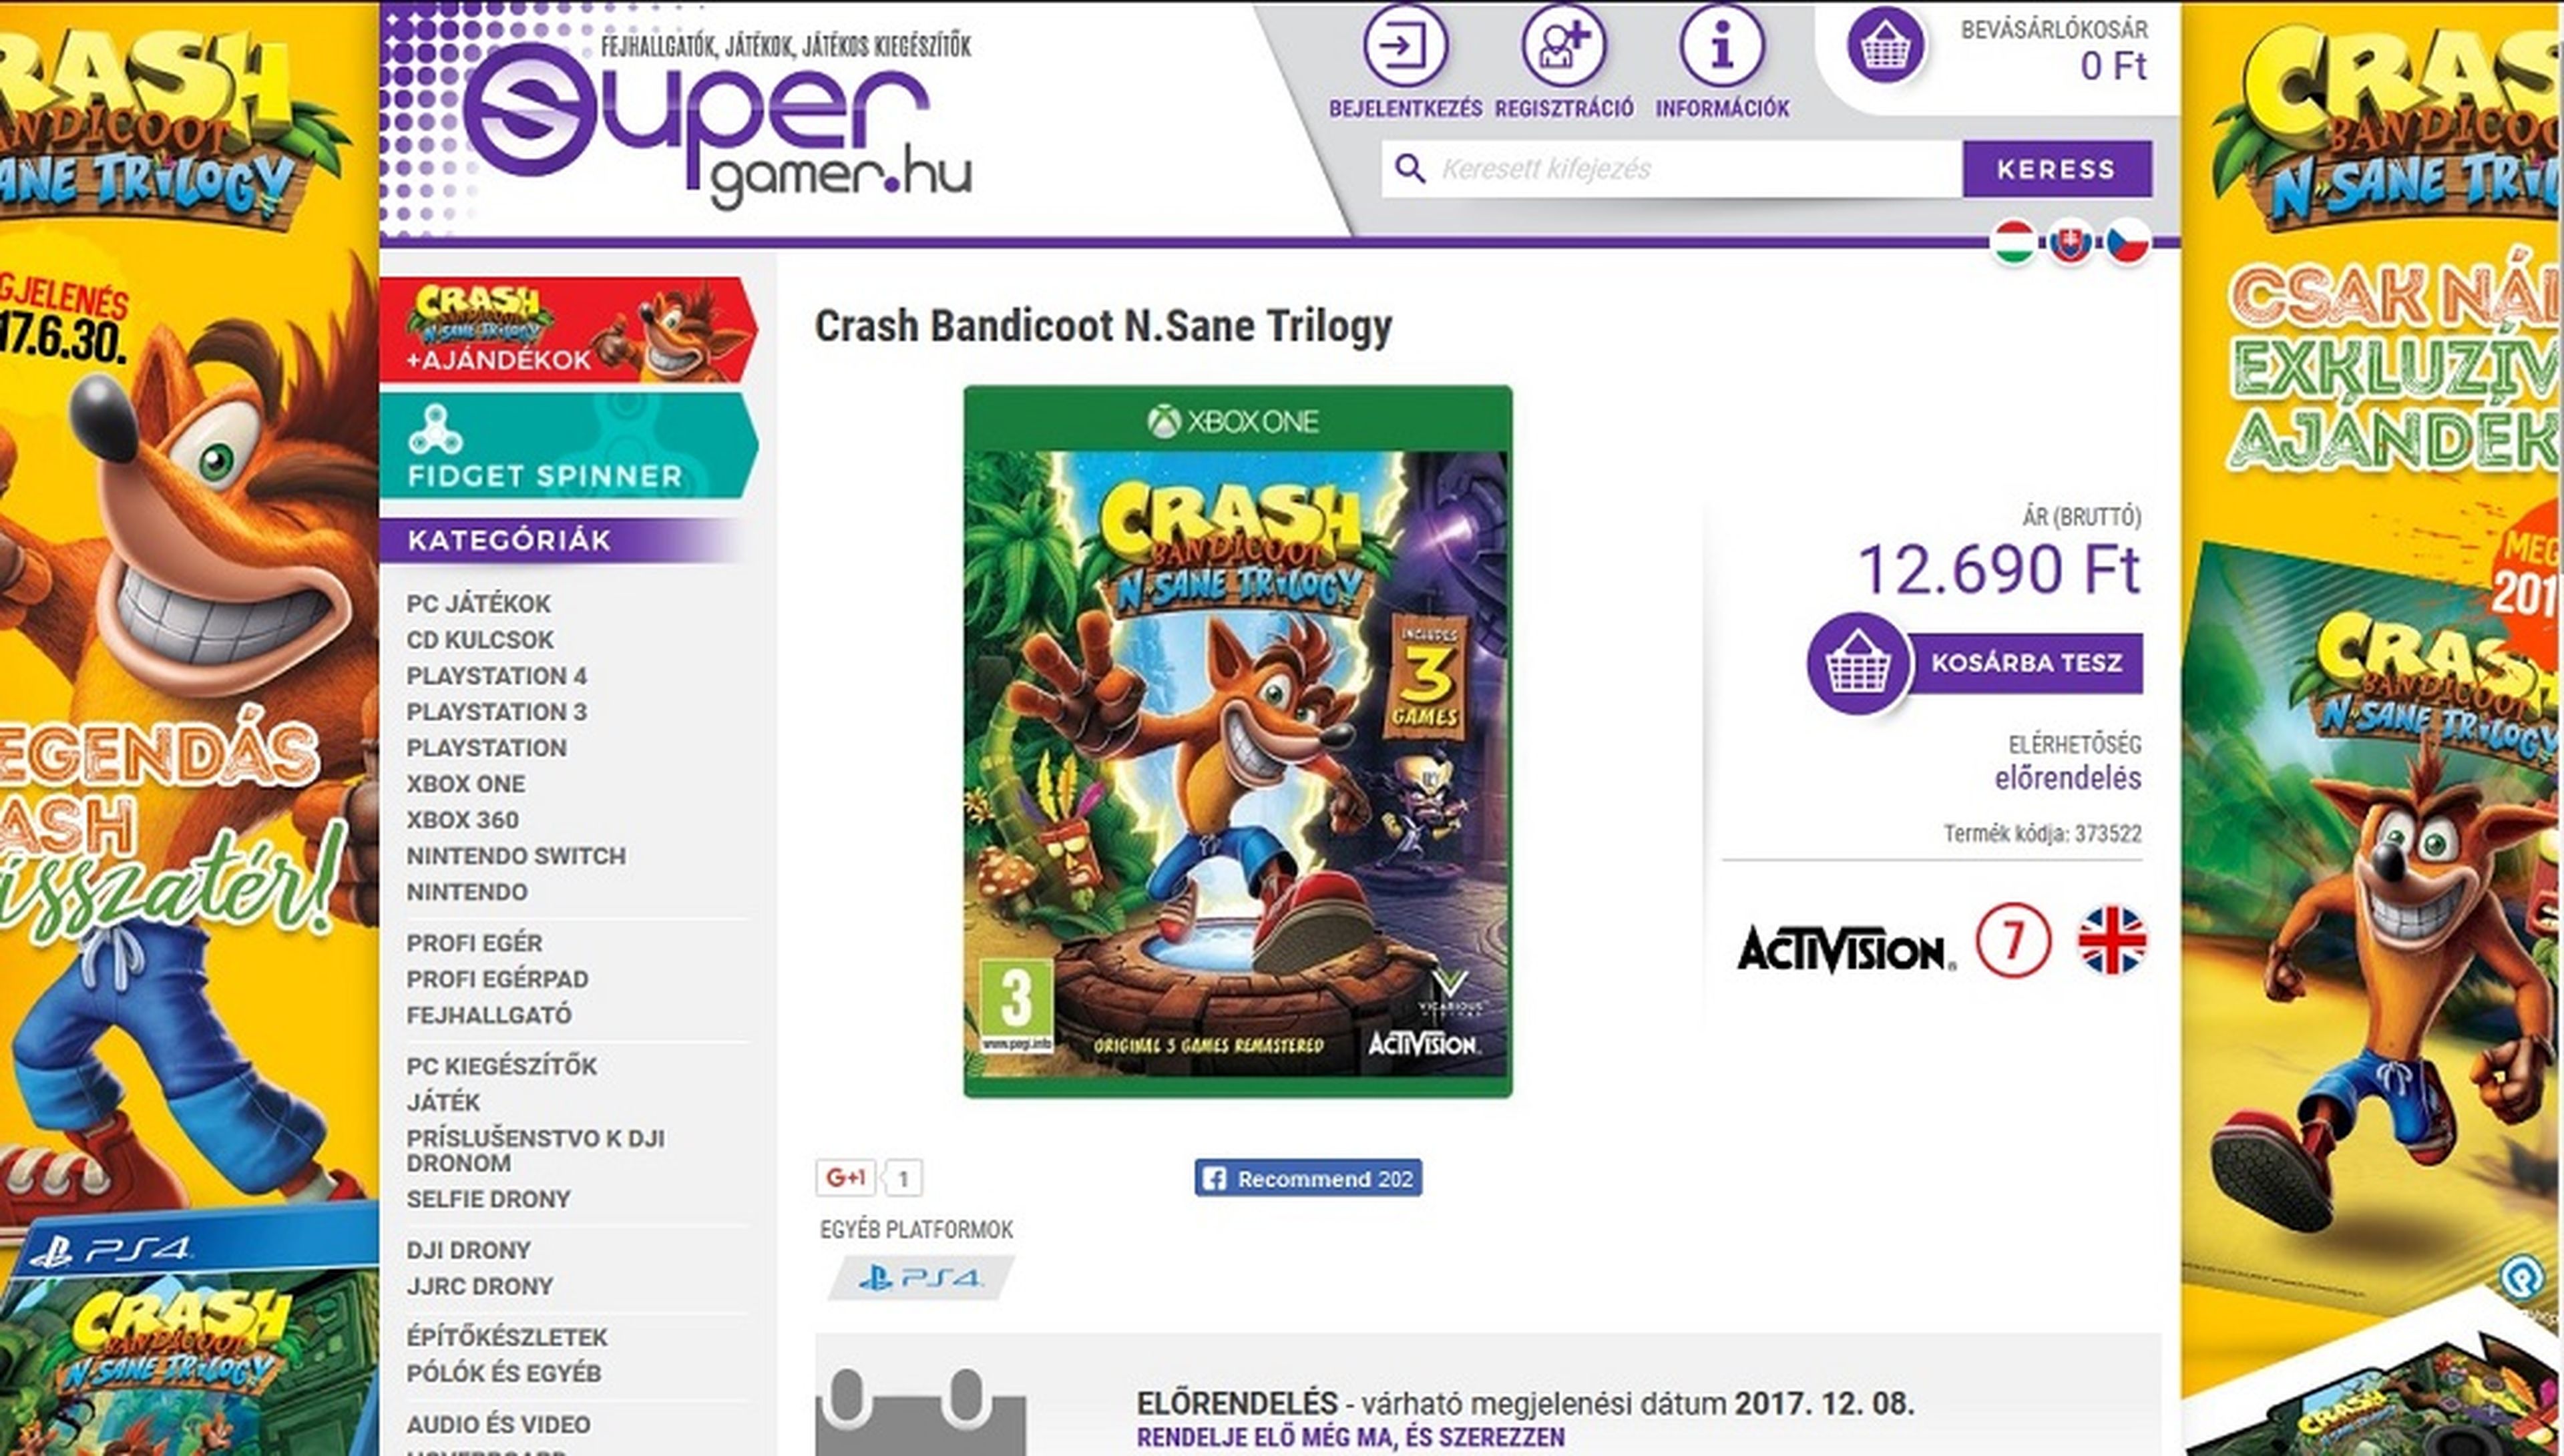 Crash Bandicoot N. Sane Trilogy en Xbox One